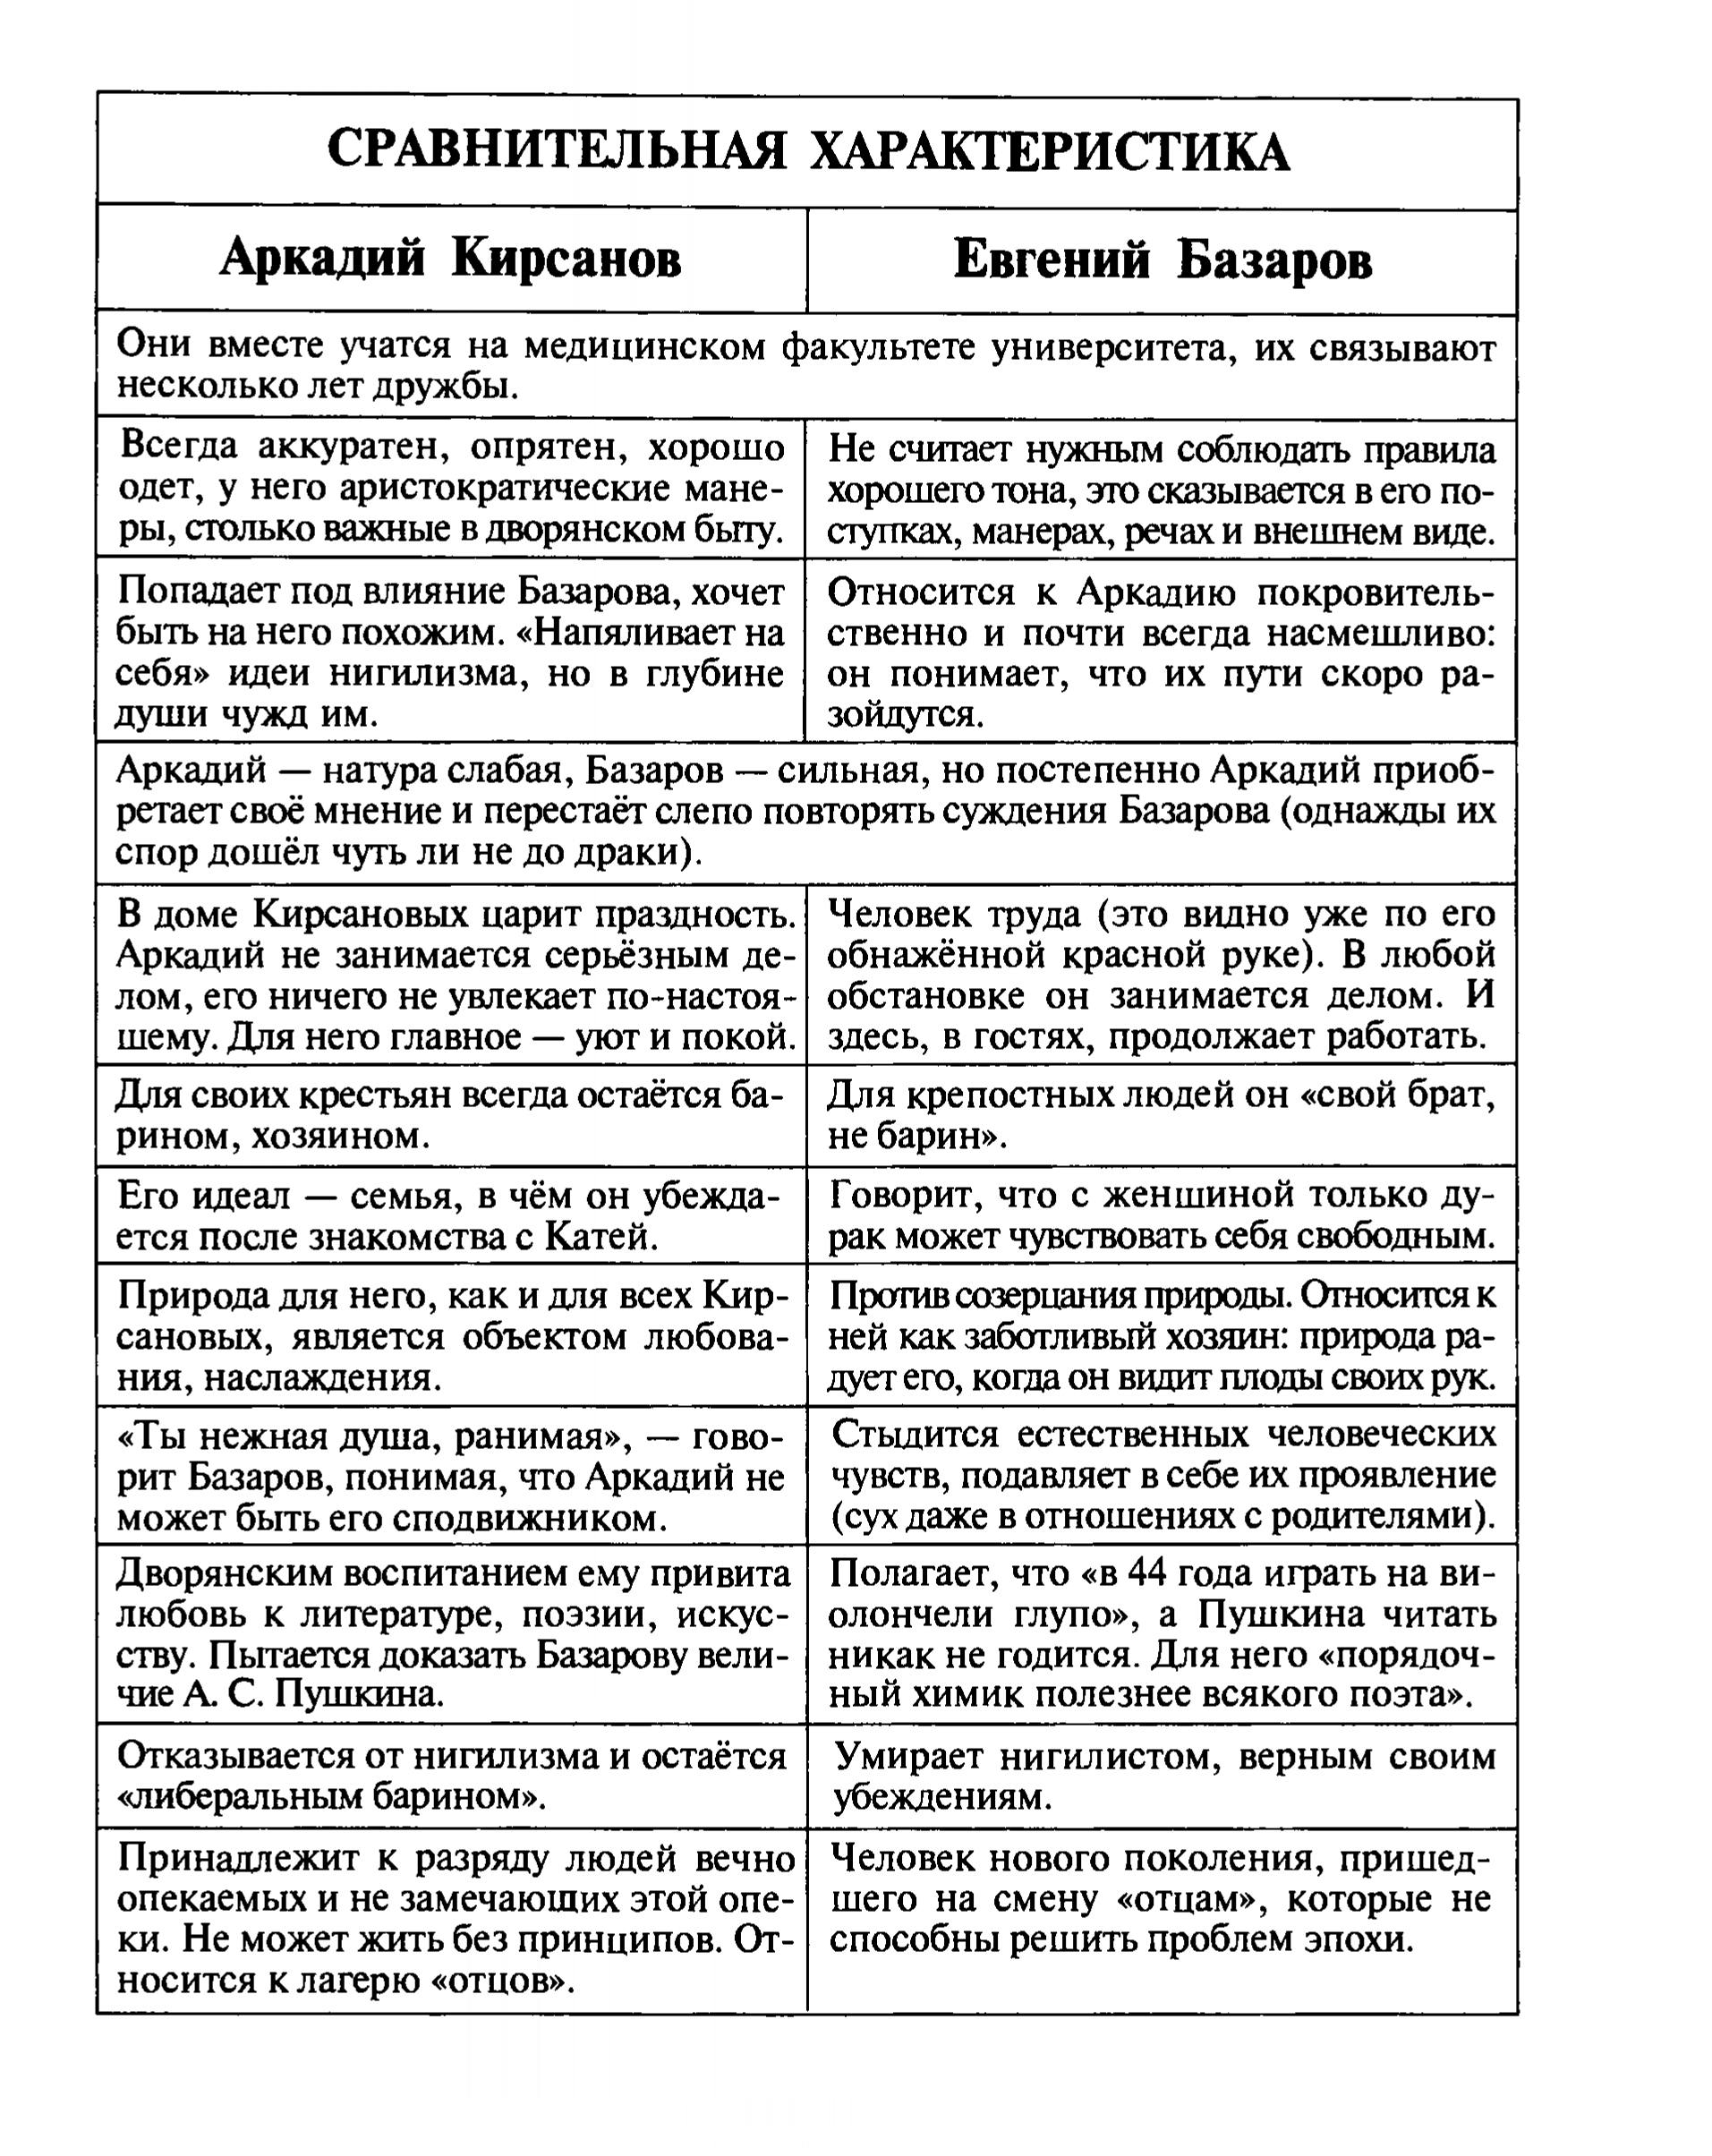 Сравнительная характеристика А. Кирсанова и Е. Базарова (таблица)